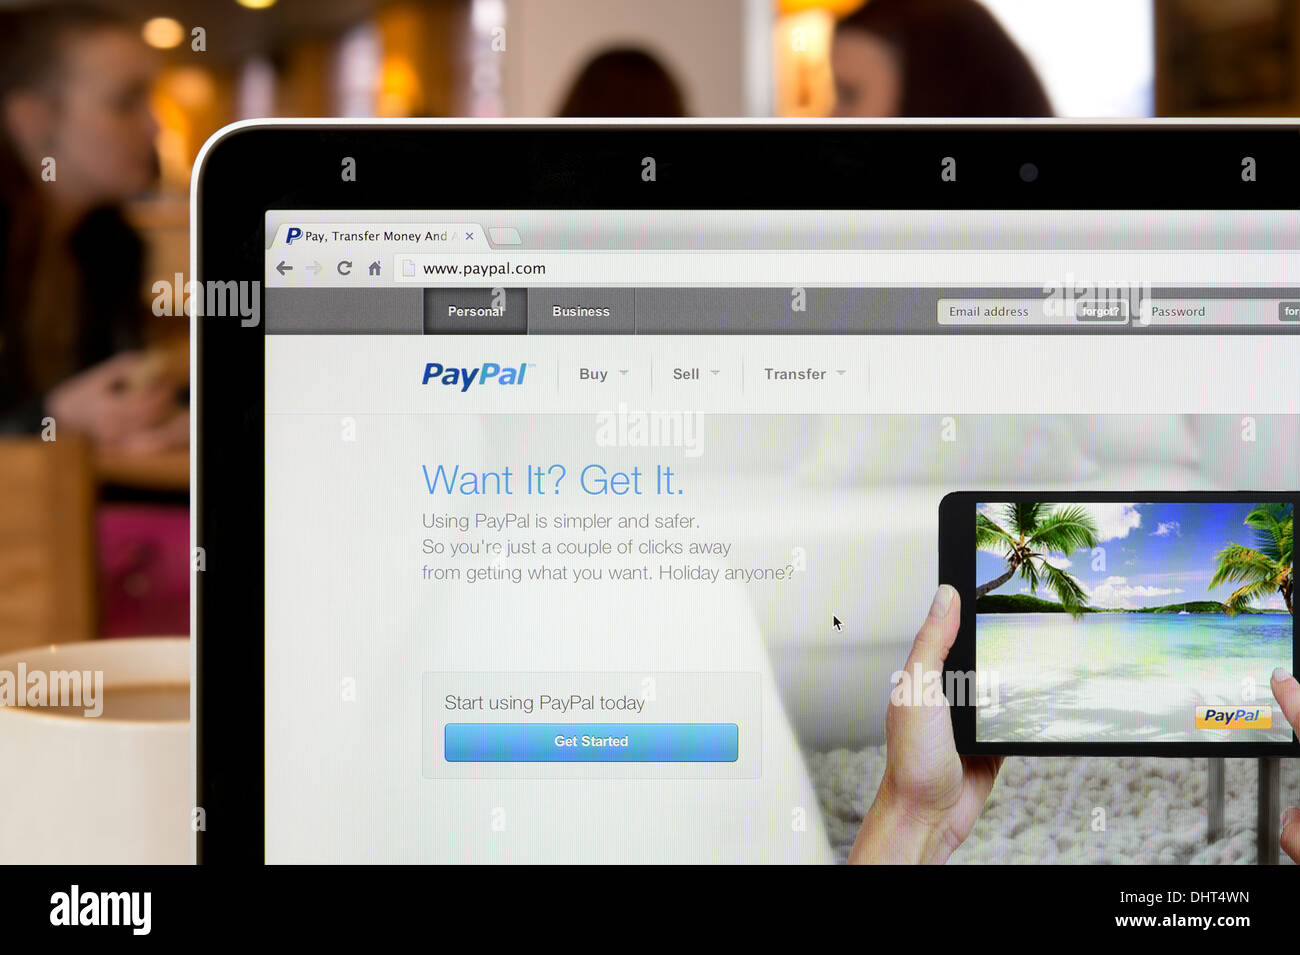 Die PayPal-Website erschossen in einem Coffee-Shop-Umfeld (nur zur redaktionellen Verwendung: print, TV, e-Book und redaktionelle Webseite). Stockfoto